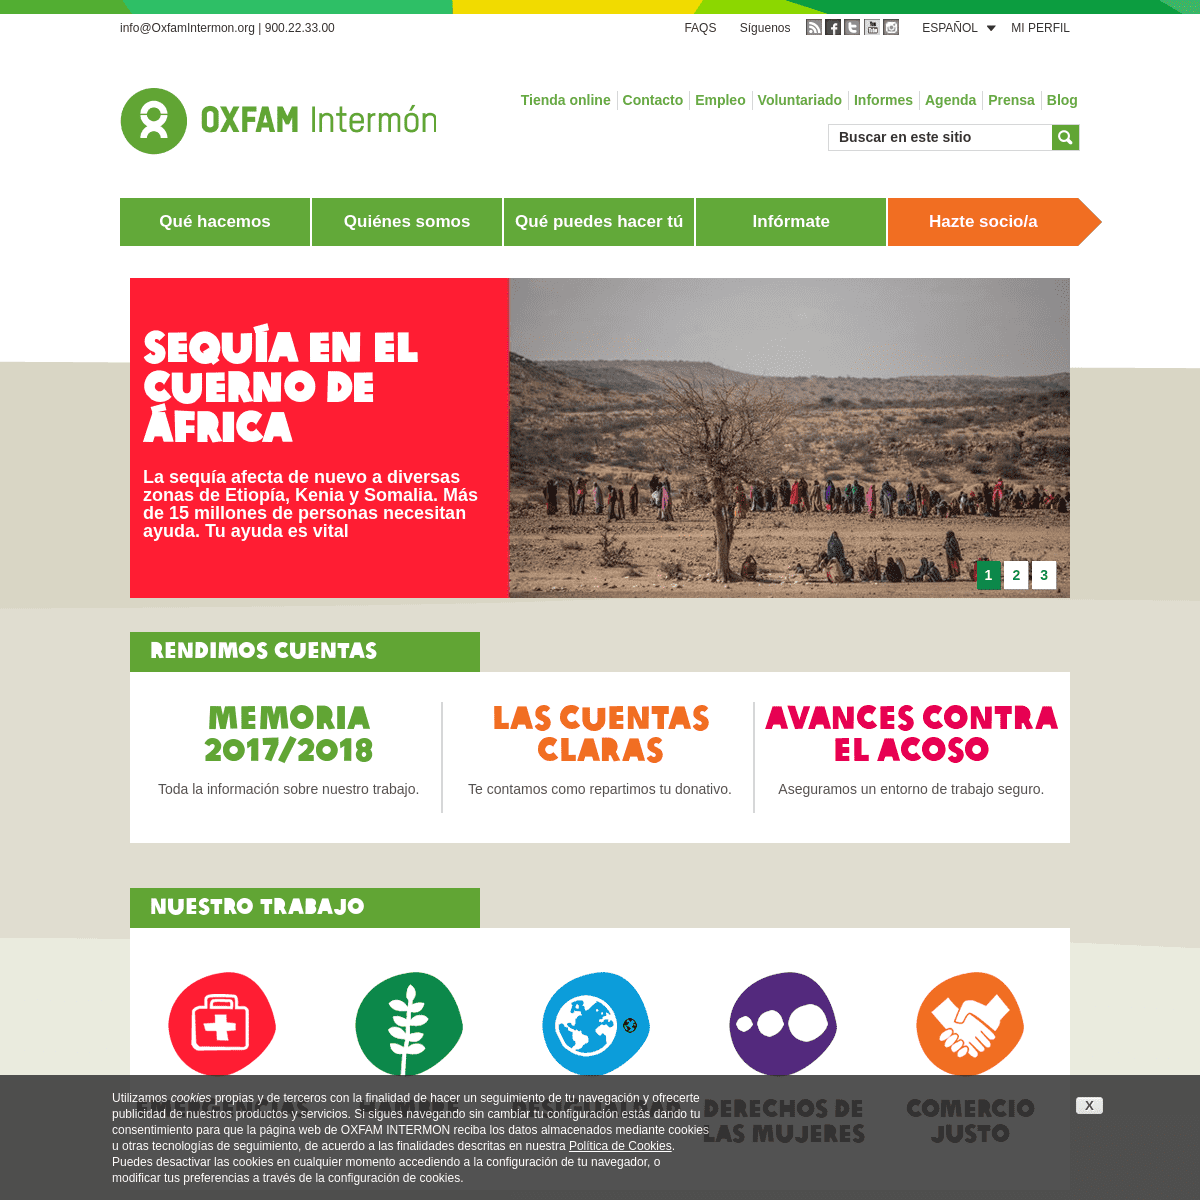 ONG que trabaja para erradicar la pobreza y la injusticia | Oxfam Intermón